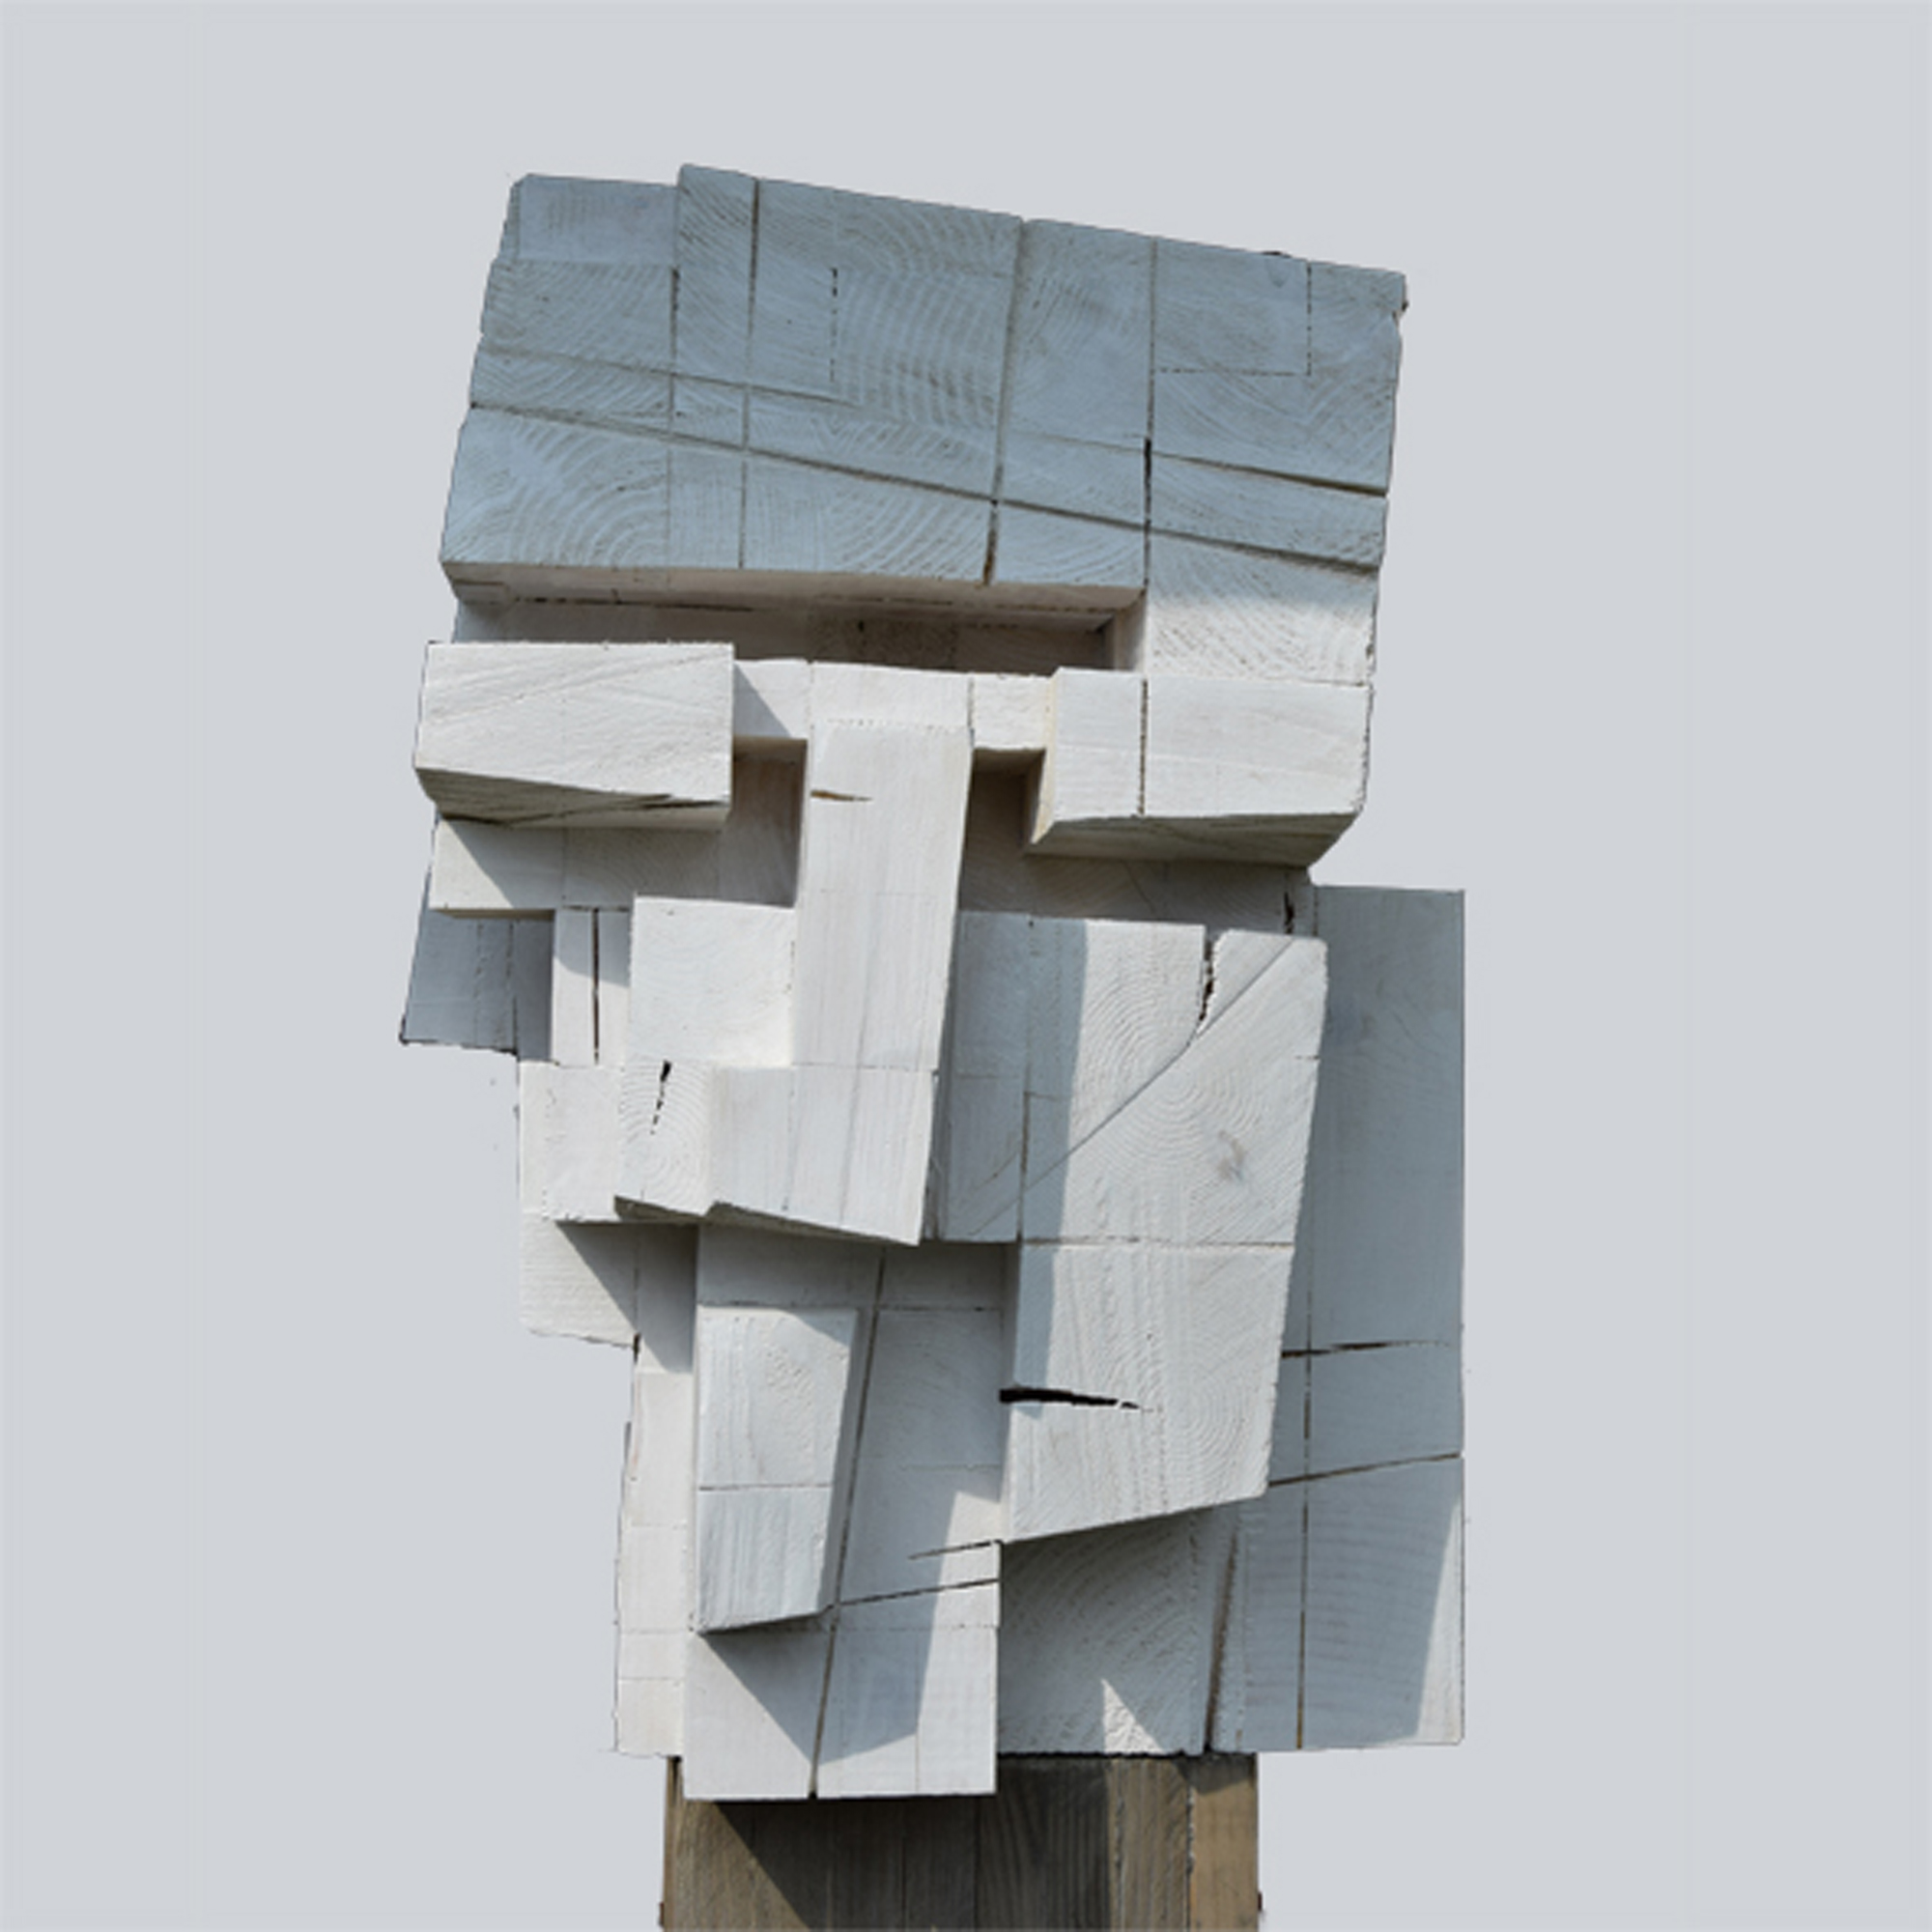 Głowa architekta z cyklu "Studium głowy", drewno klejone, patynowane, 170 x 45 x 50 cm